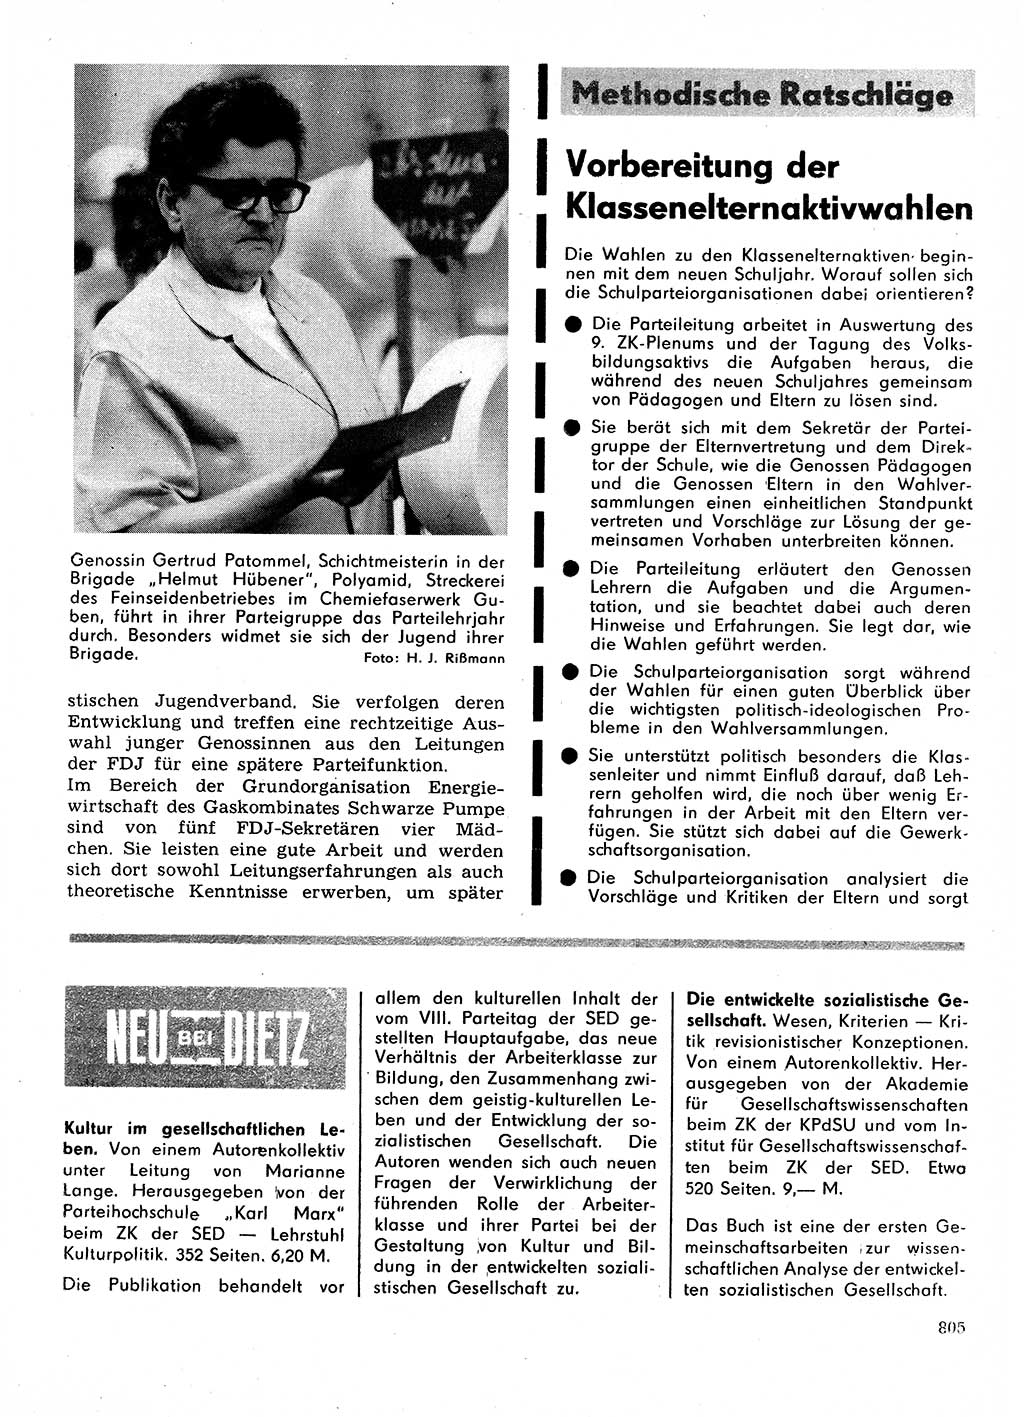 Neuer Weg (NW), Organ des Zentralkomitees (ZK) der SED (Sozialistische Einheitspartei Deutschlands) für Fragen des Parteilebens, 28. Jahrgang [Deutsche Demokratische Republik (DDR)] 1973, Seite 805 (NW ZK SED DDR 1973, S. 805)